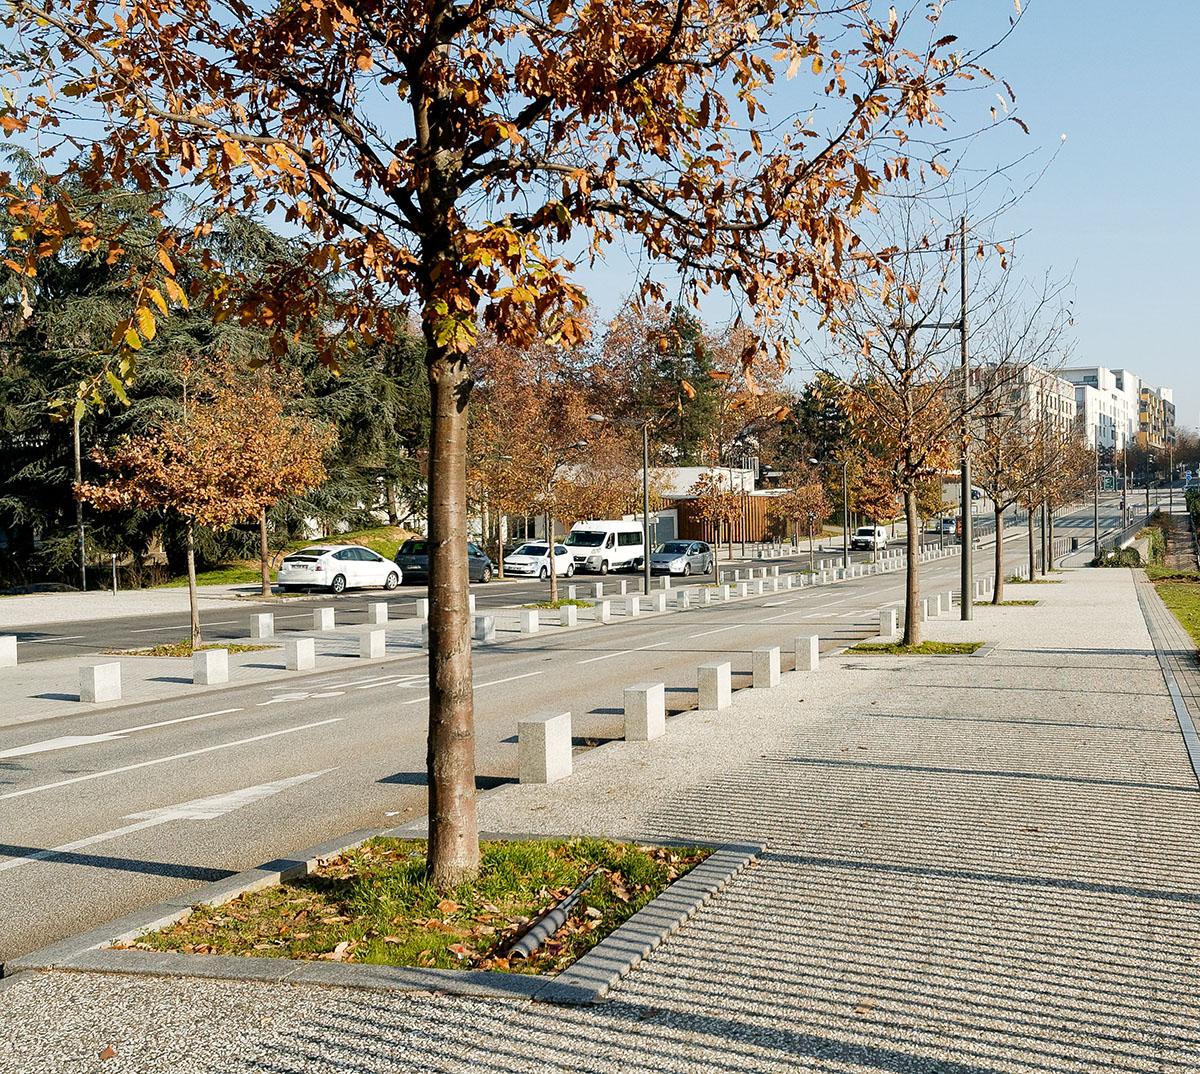 Avenue Rosa Parks (1913-2005) à la Sauvegarde La Duchère (Lyon 9ème)